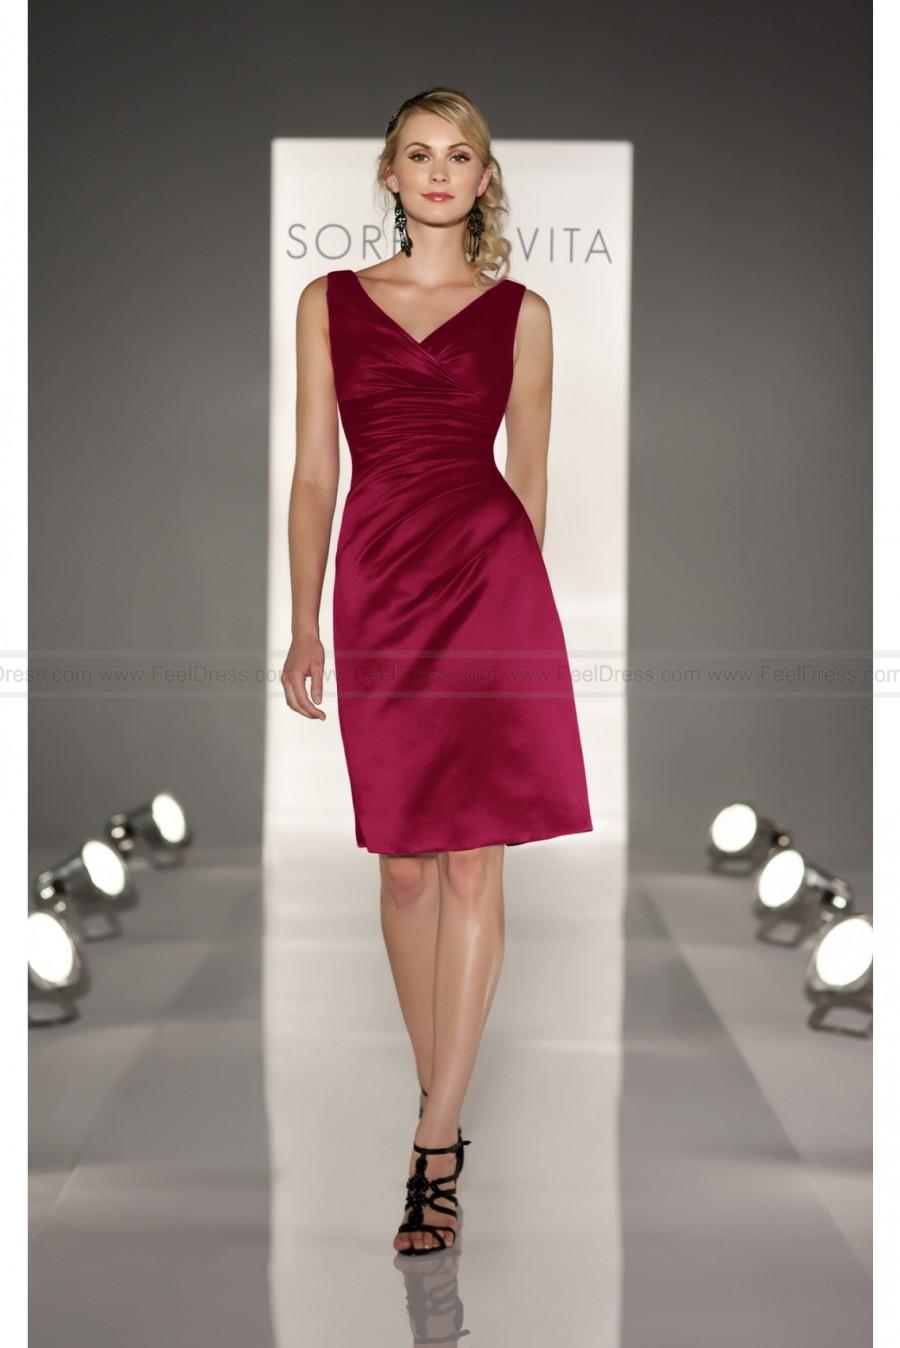 Hochzeit - Sorella Vita Burgundy Bridesmaid Dress Style 8199